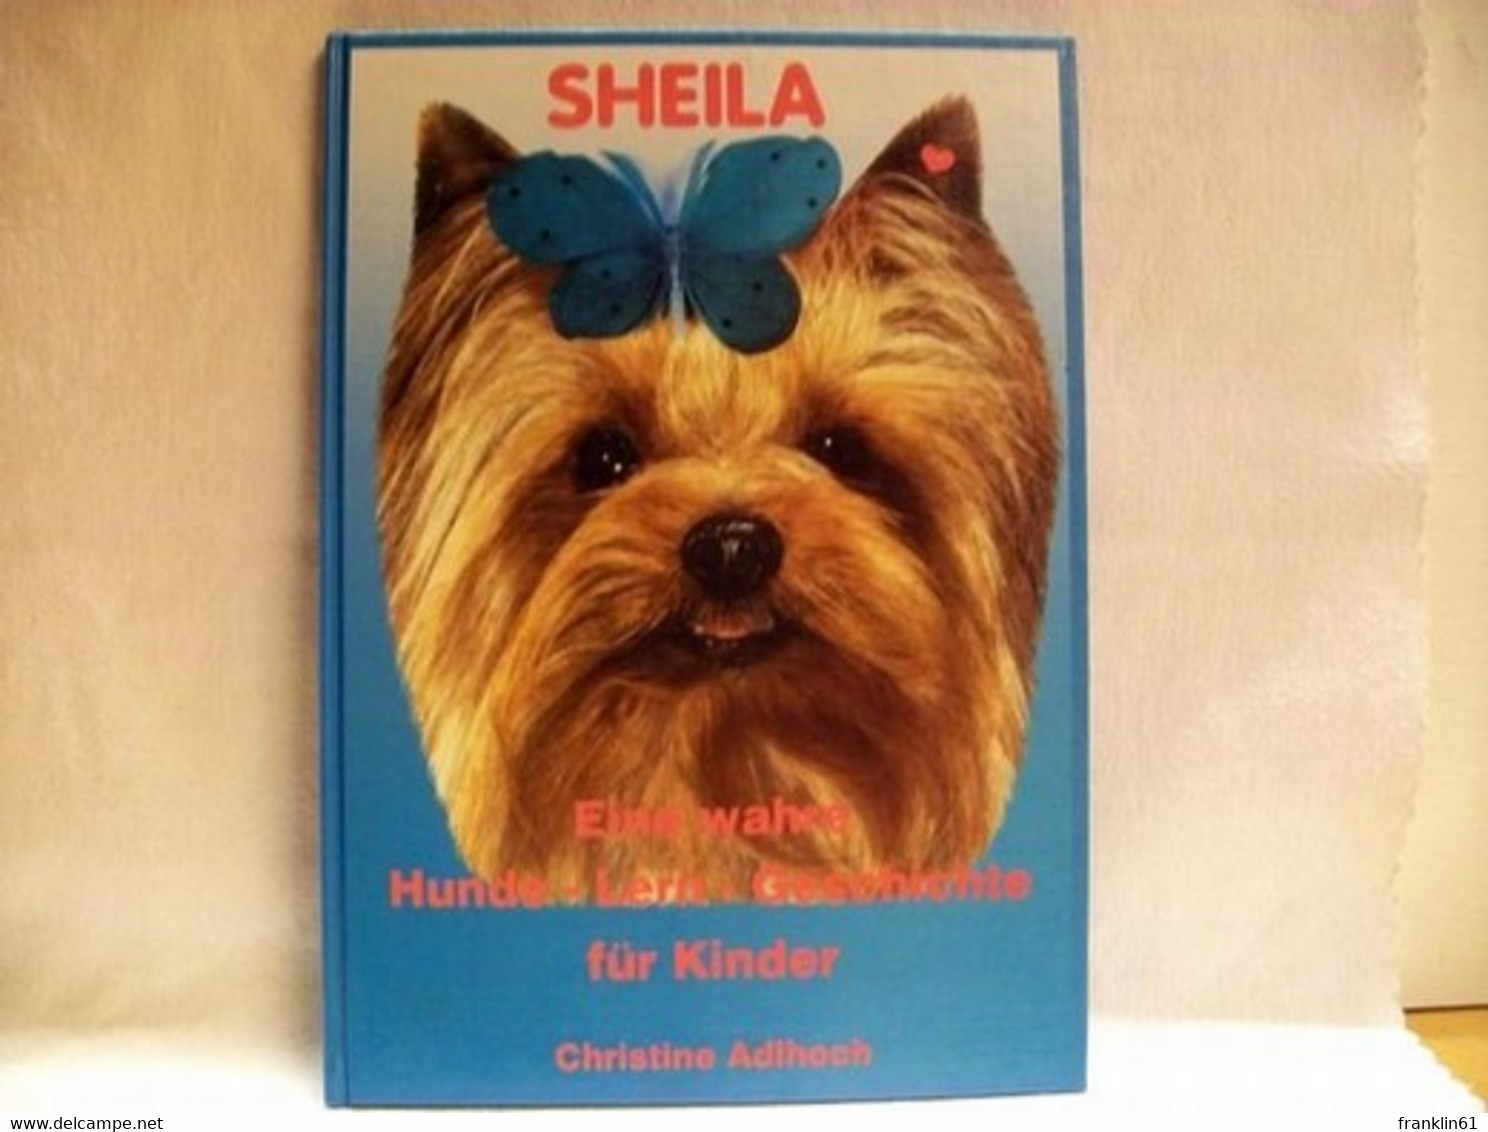 Sheila : Eine Wahre Hunde-Lern-Geschichte Für Kinder - Animaux